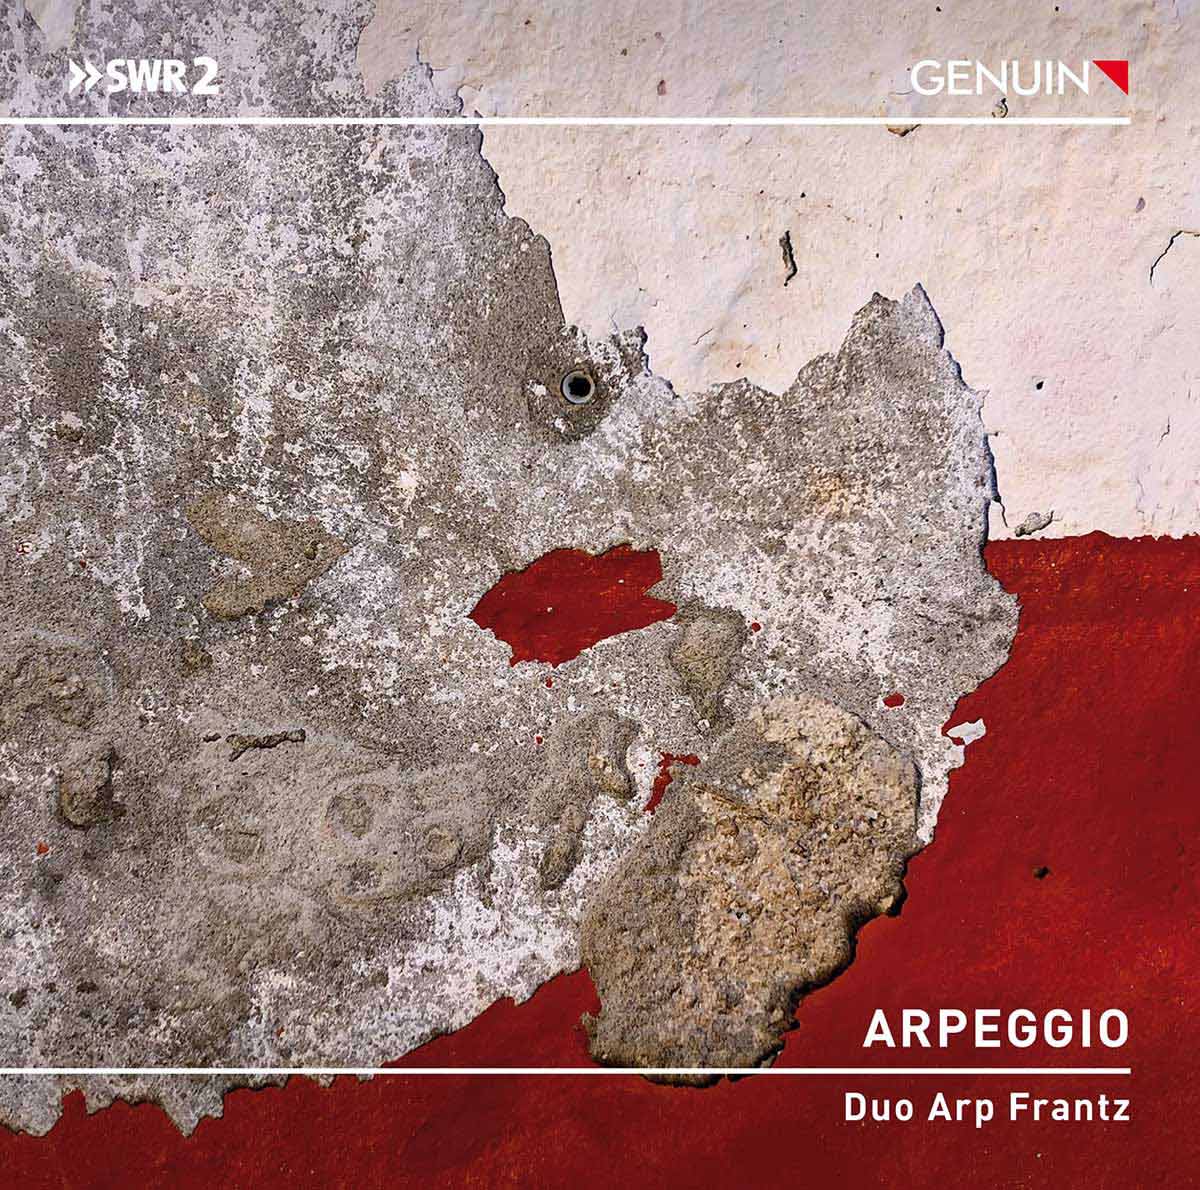 CD album cover 'Arpeggio' (GEN 23820) with Julian Arp, Caspar Frantz